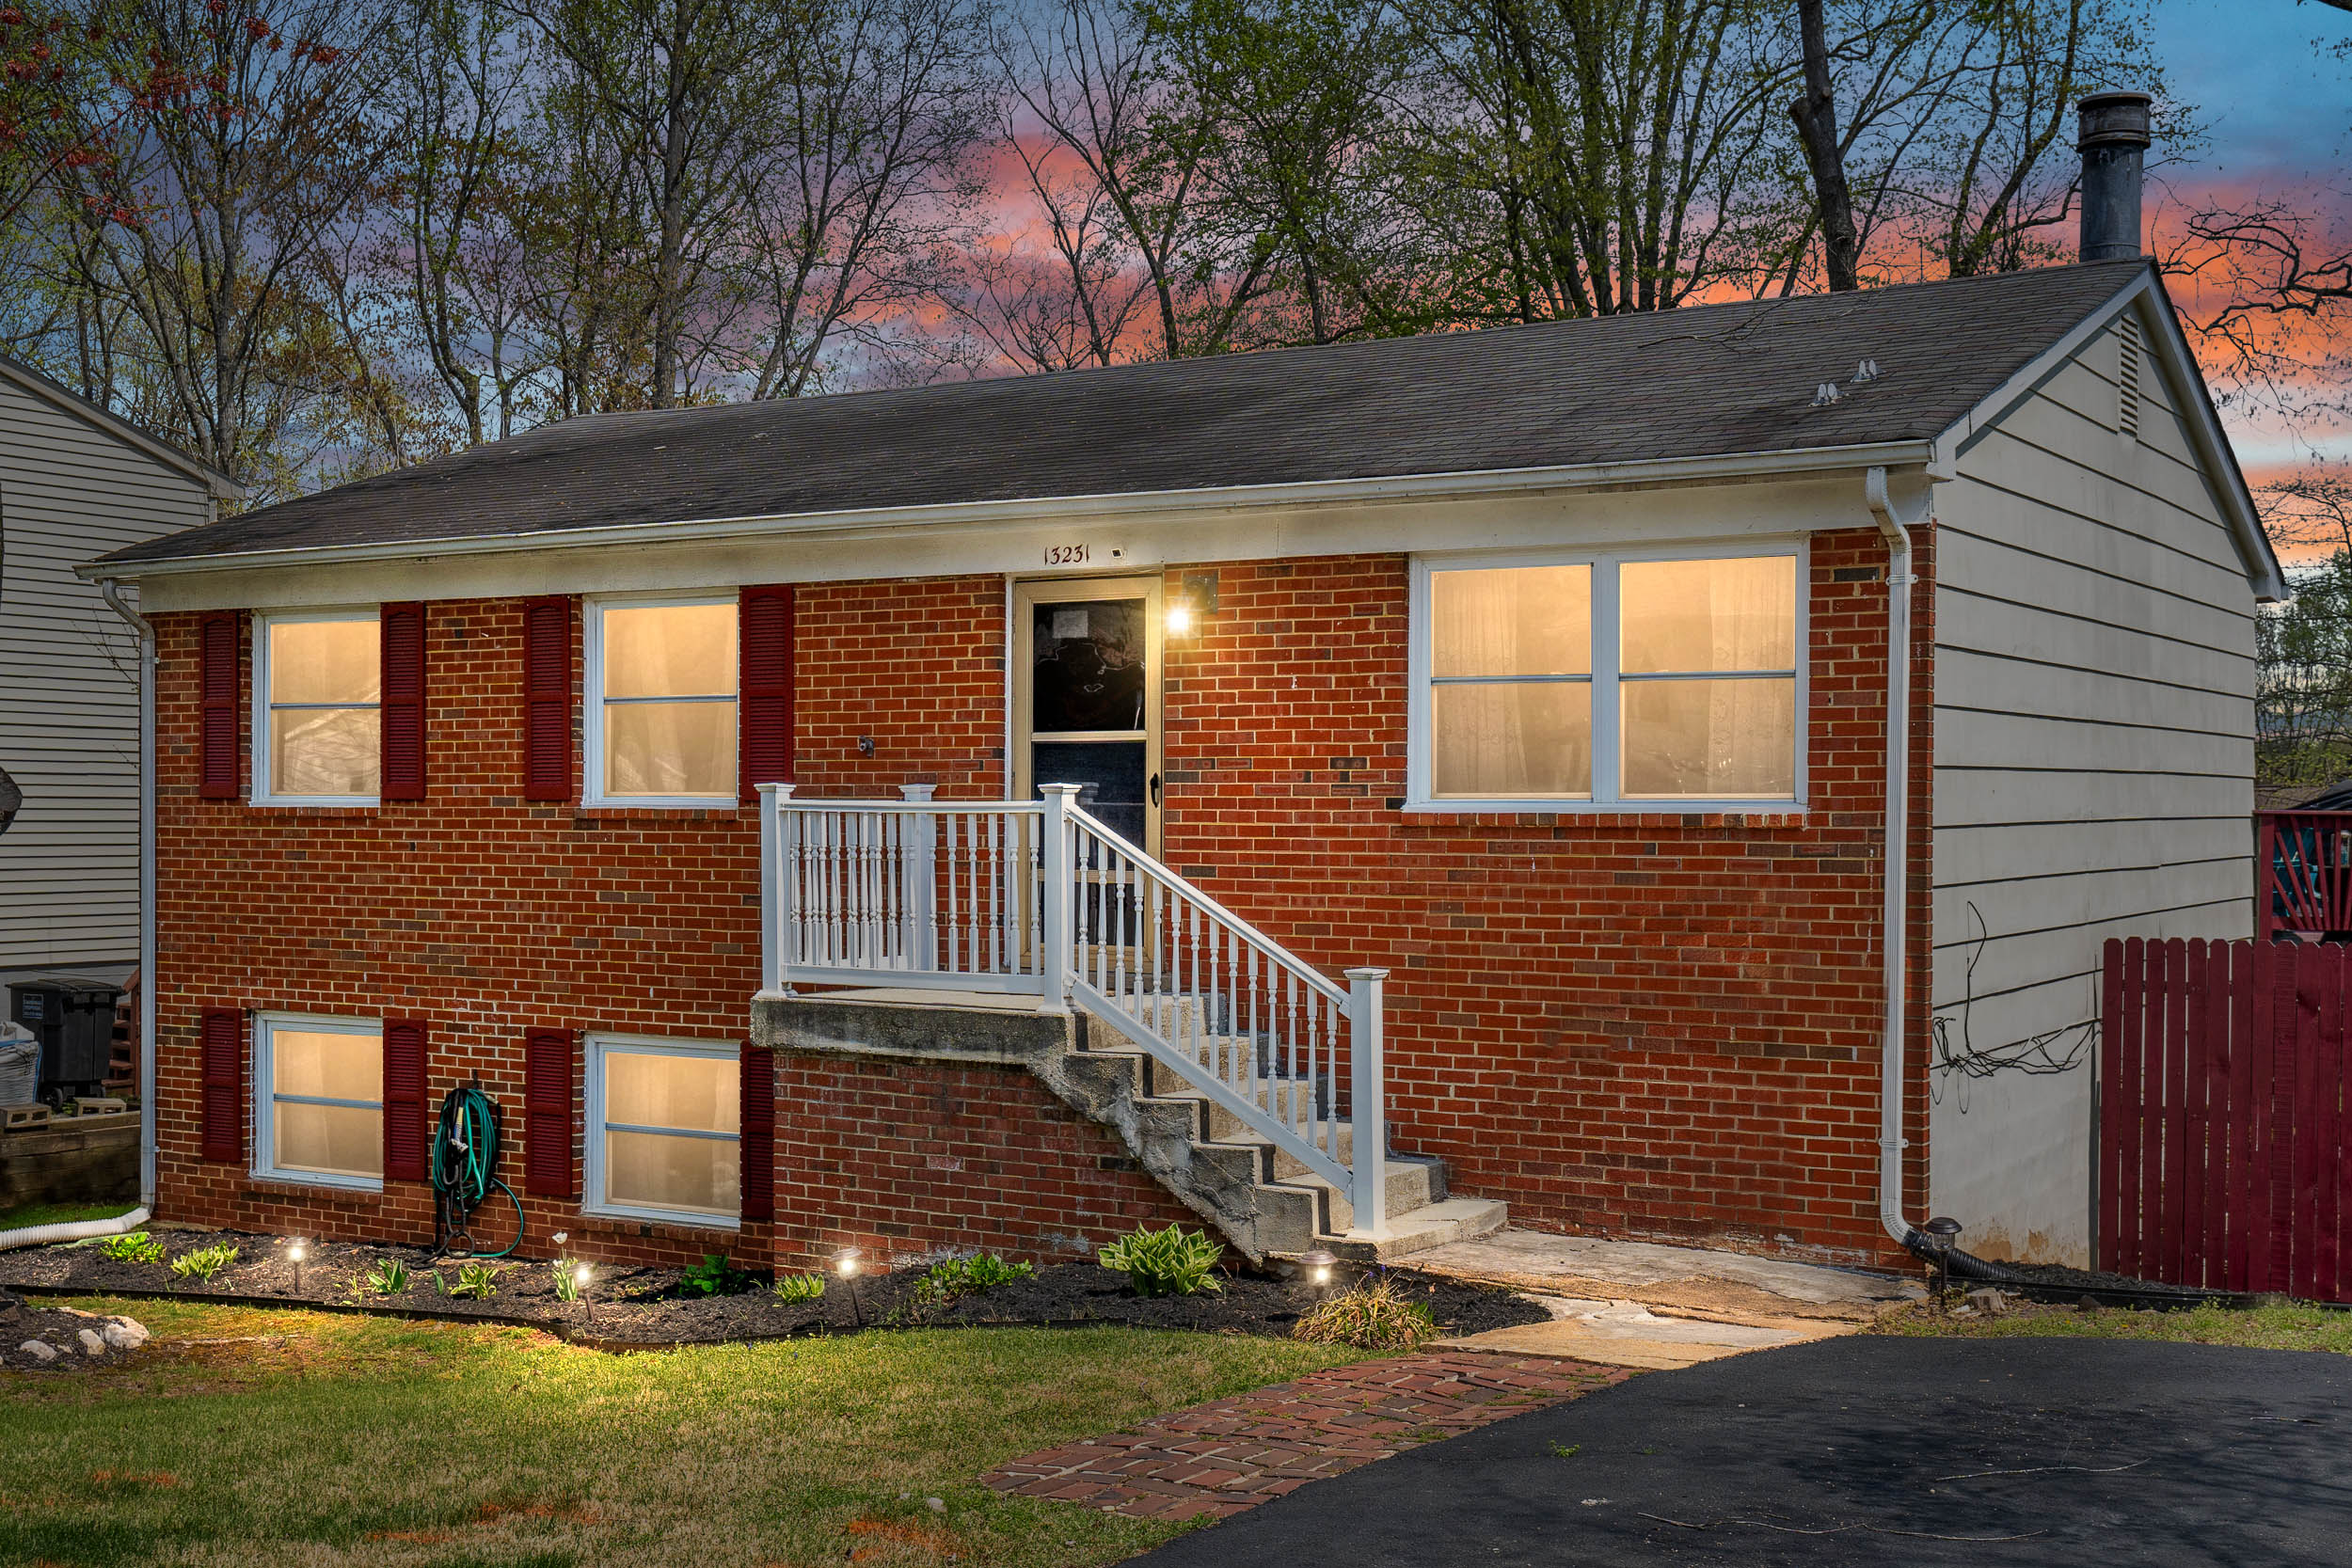 Houses for Sale in Woodbridge, Virginia for under $500k